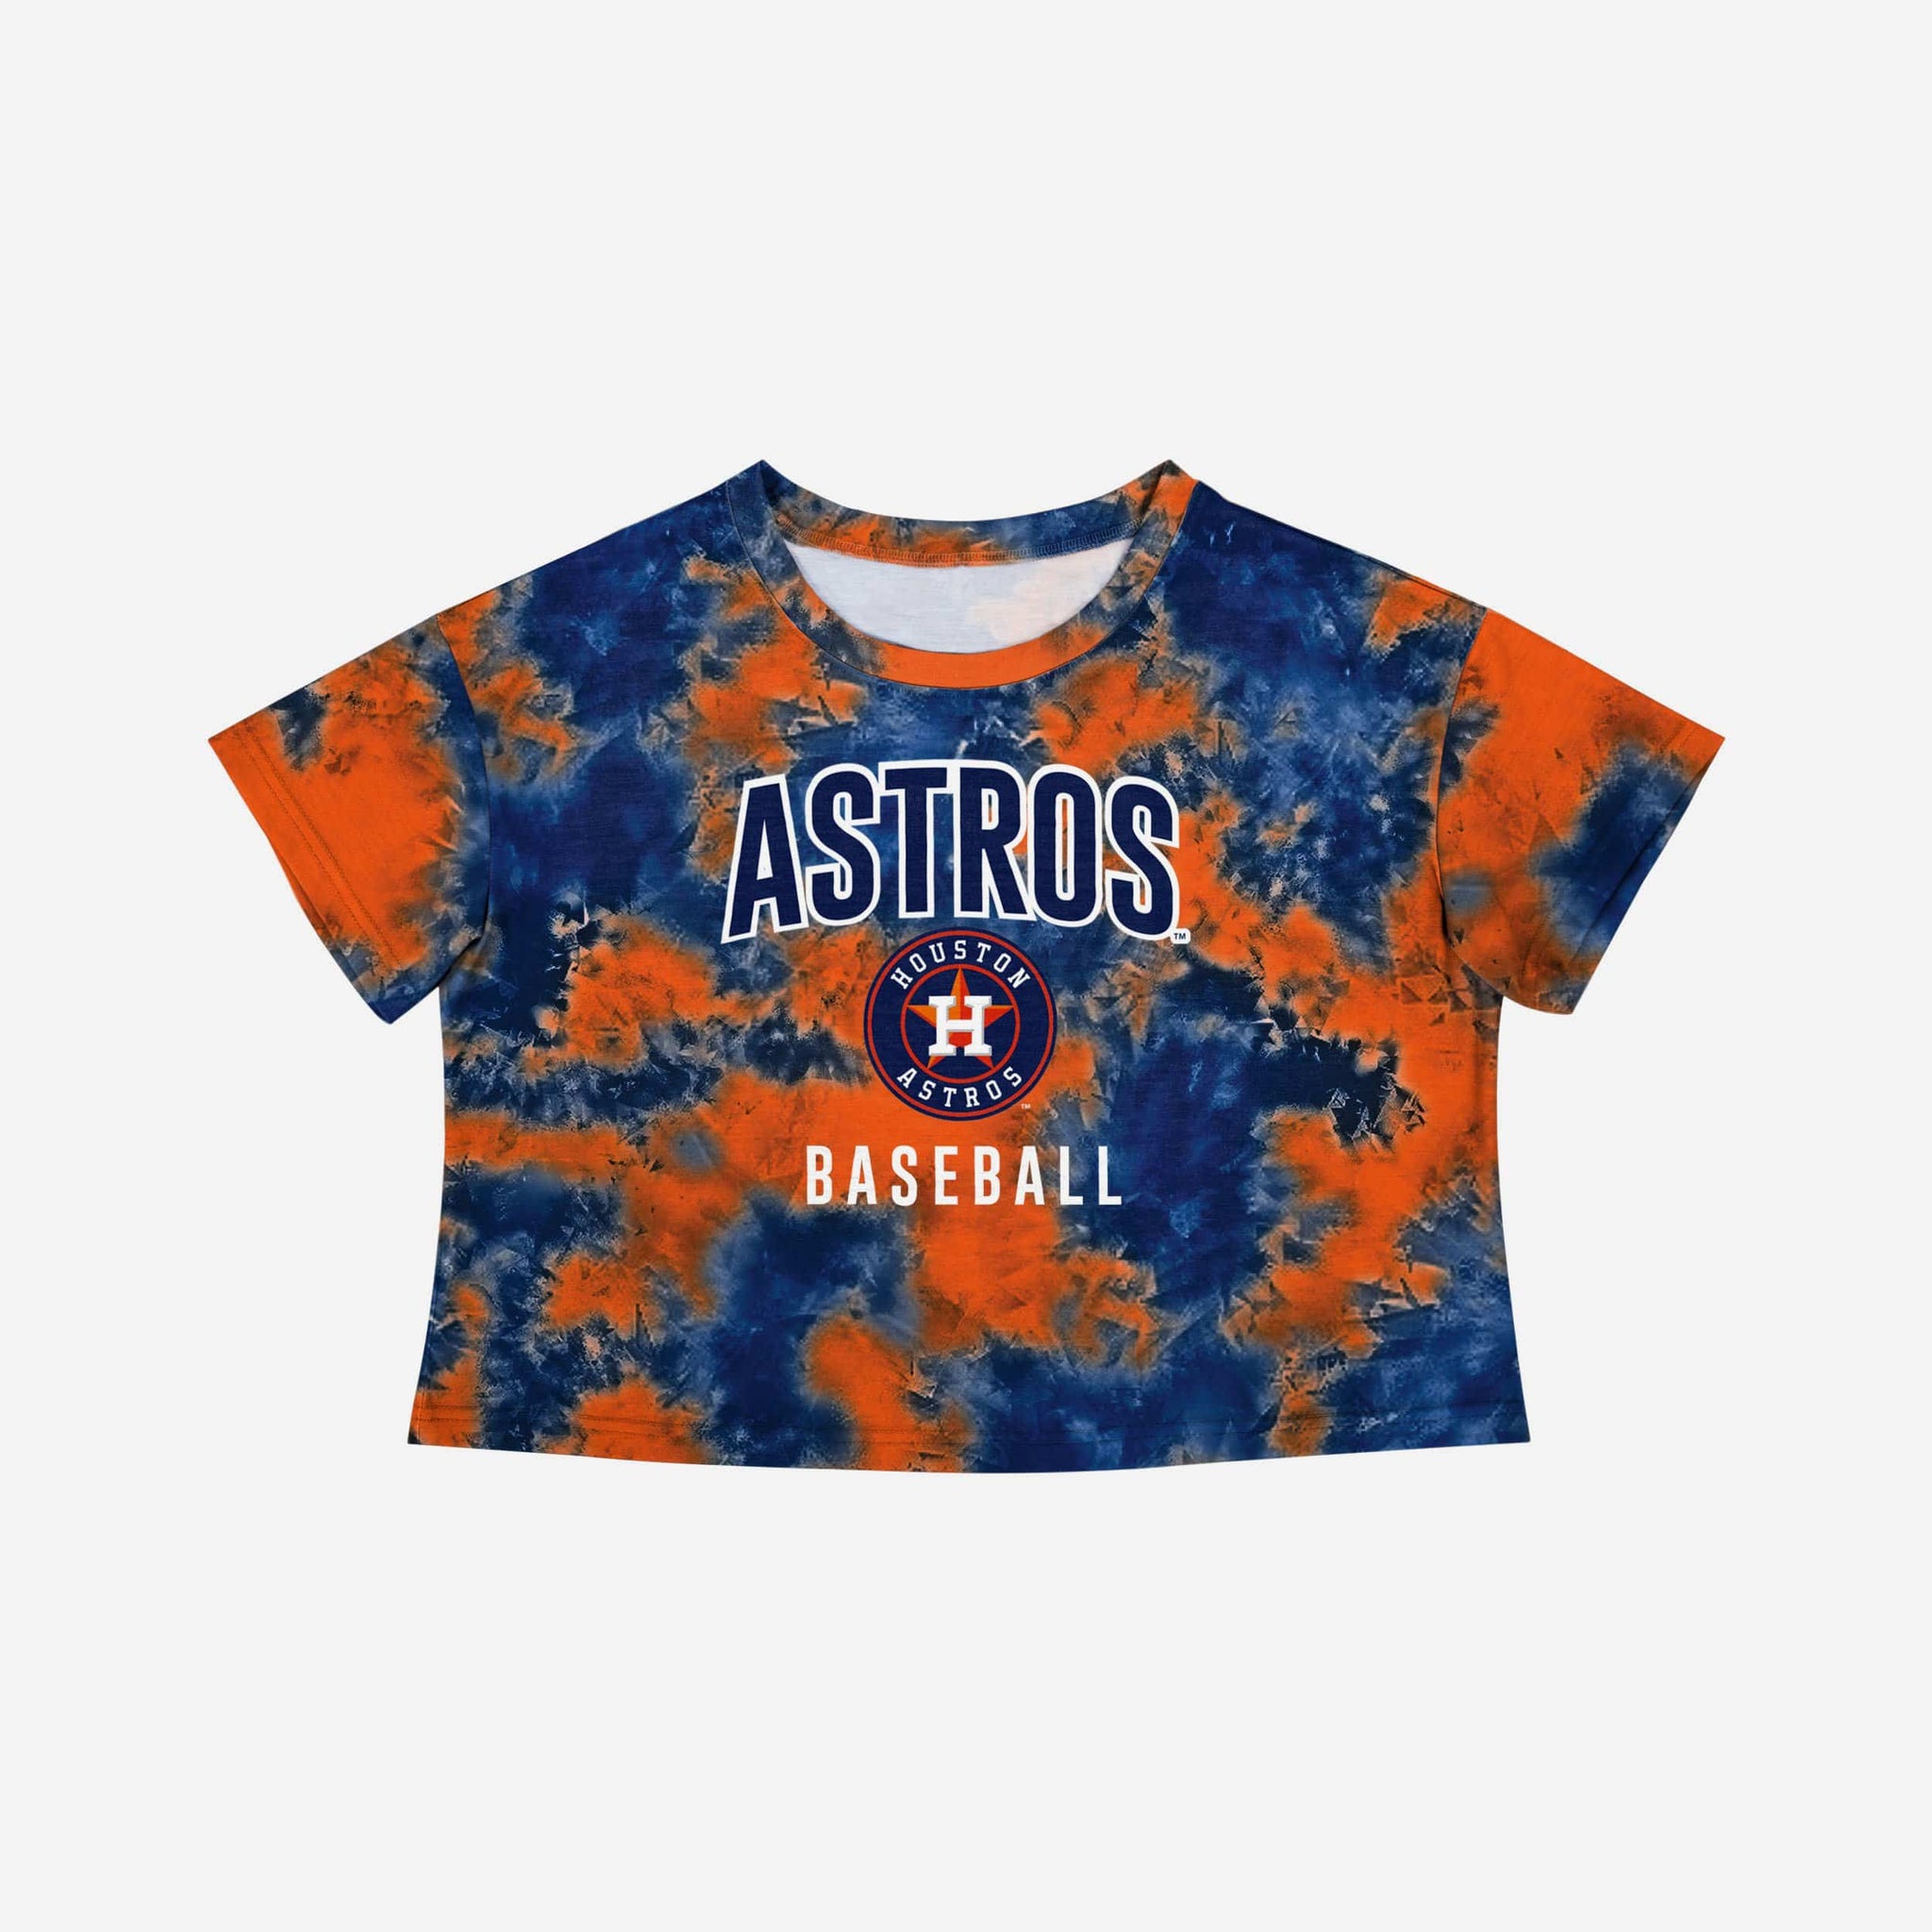 Astros GAME DAY Tshirt, Hand Tie dye Tshirt